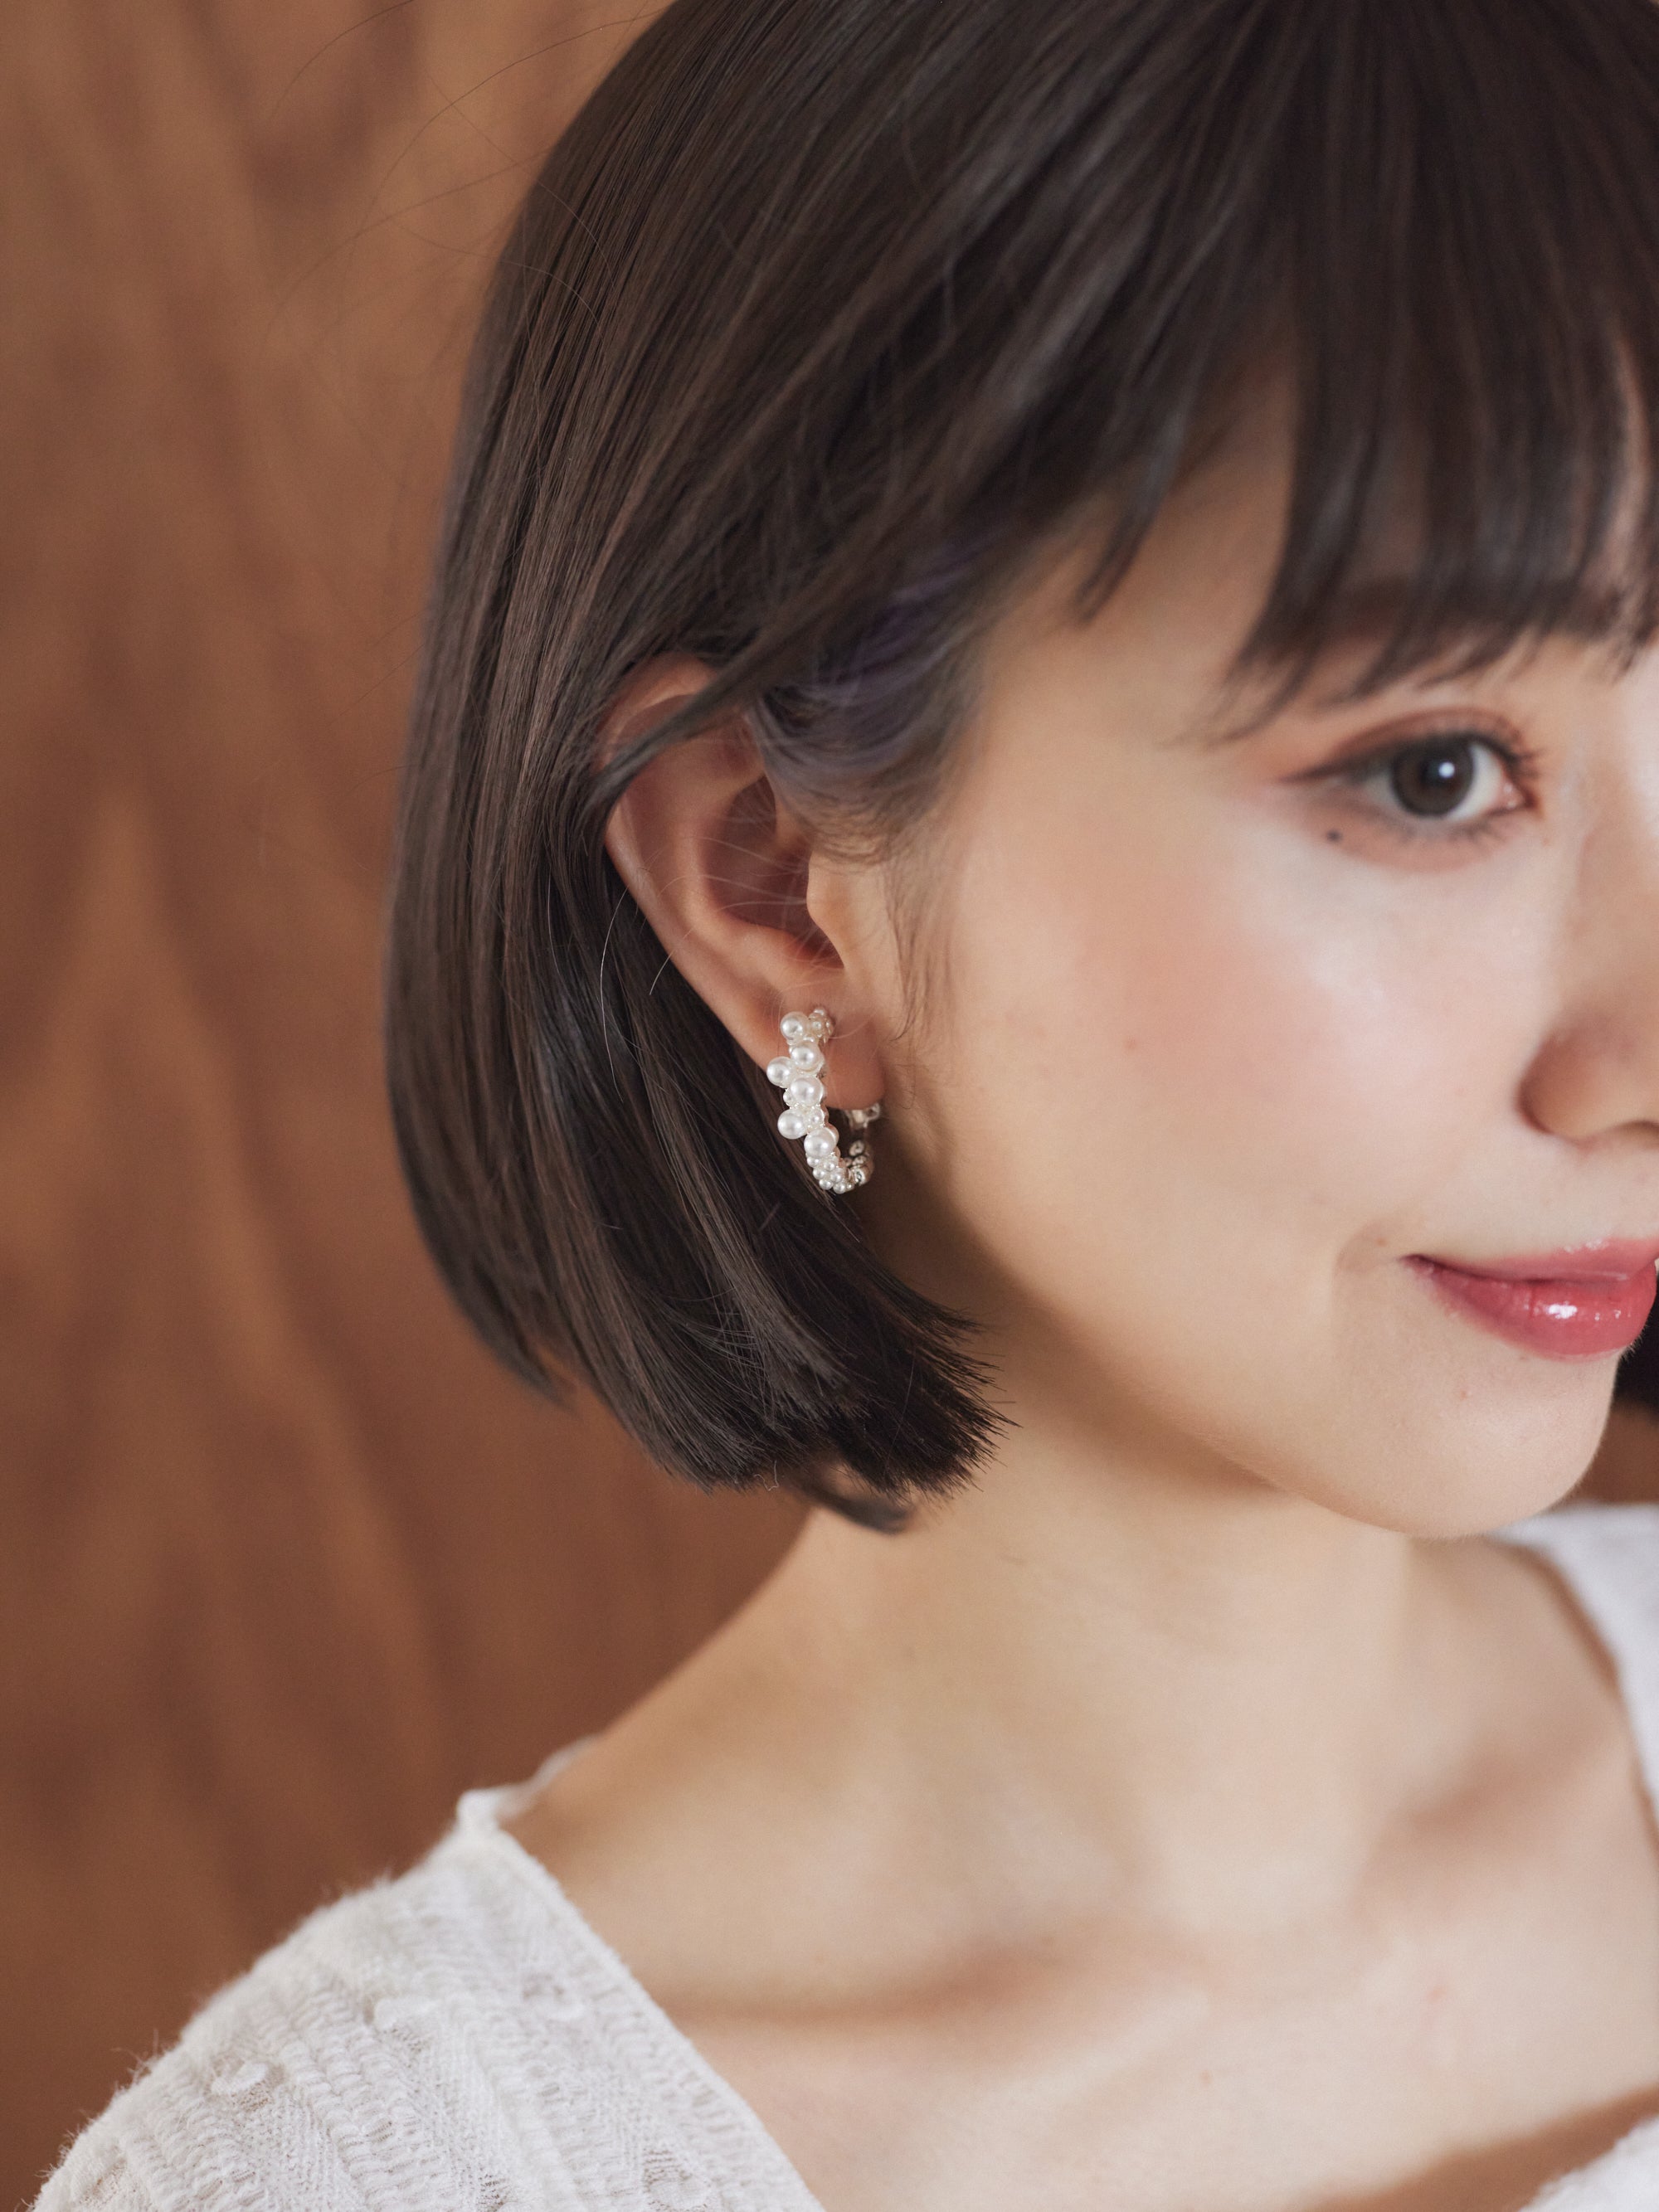 Fake peal pierces/earrings